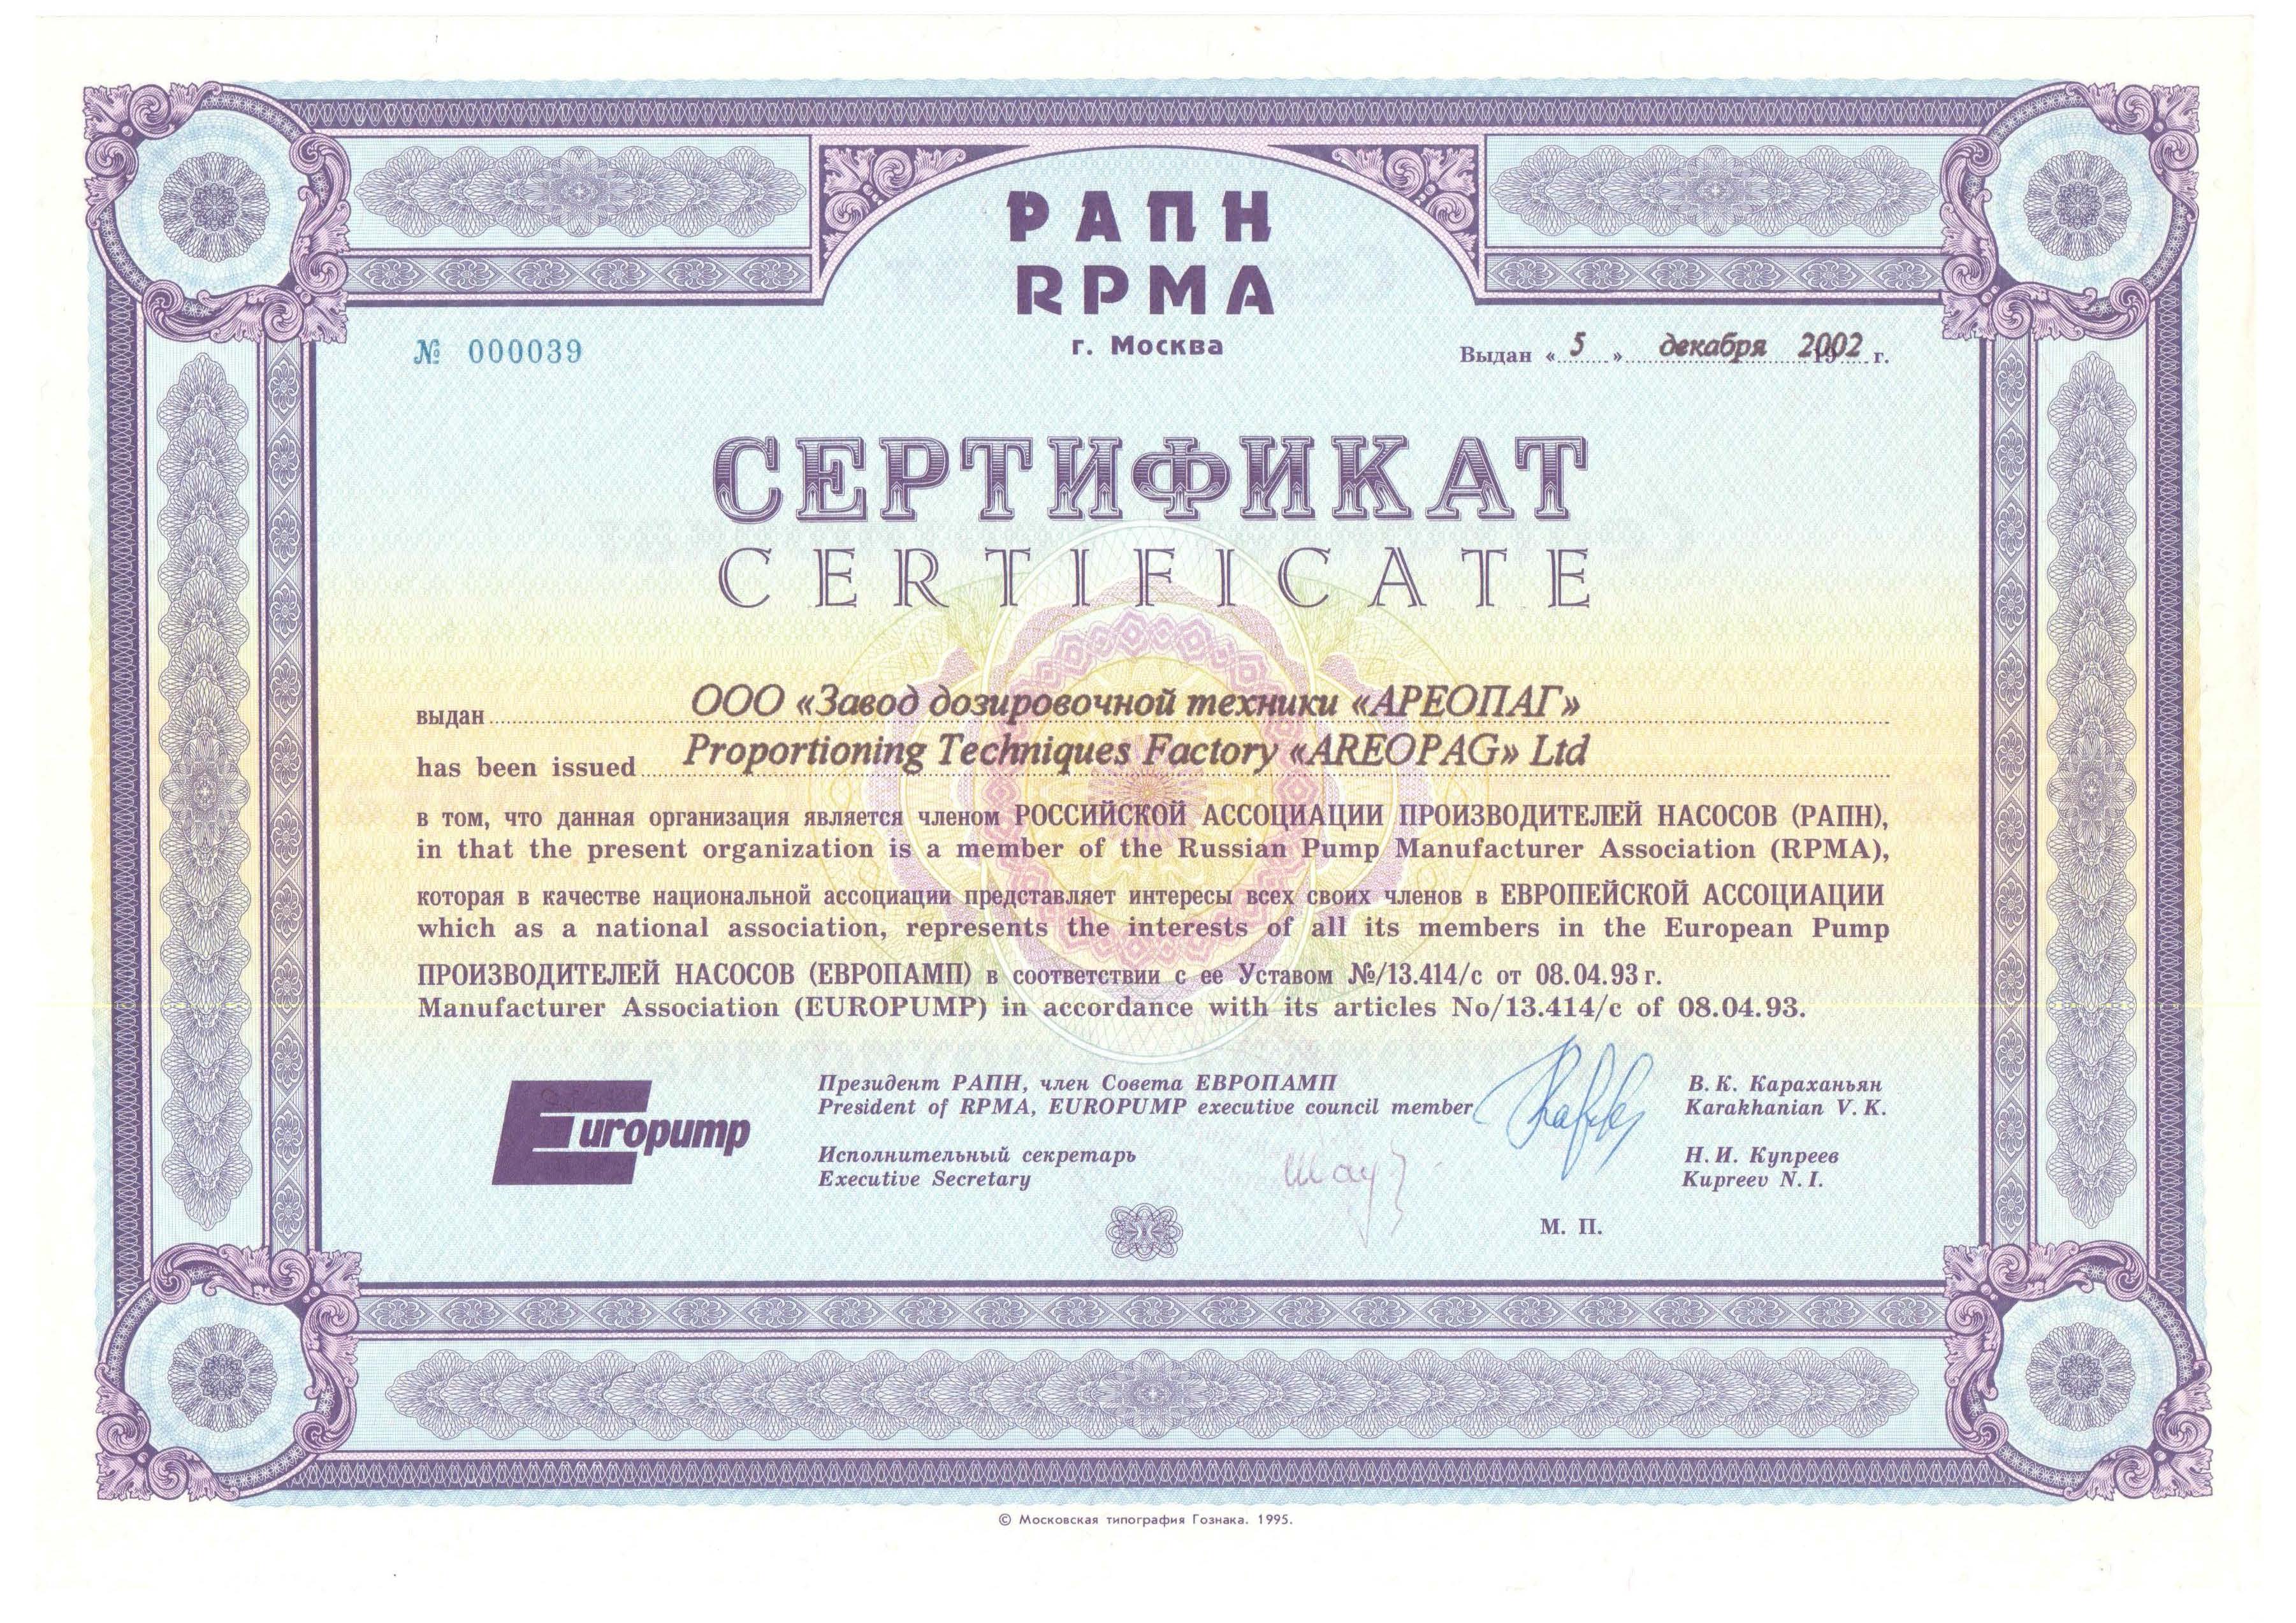 Сертификат Российской Ассоциации Производителей Насосов (РАПН)